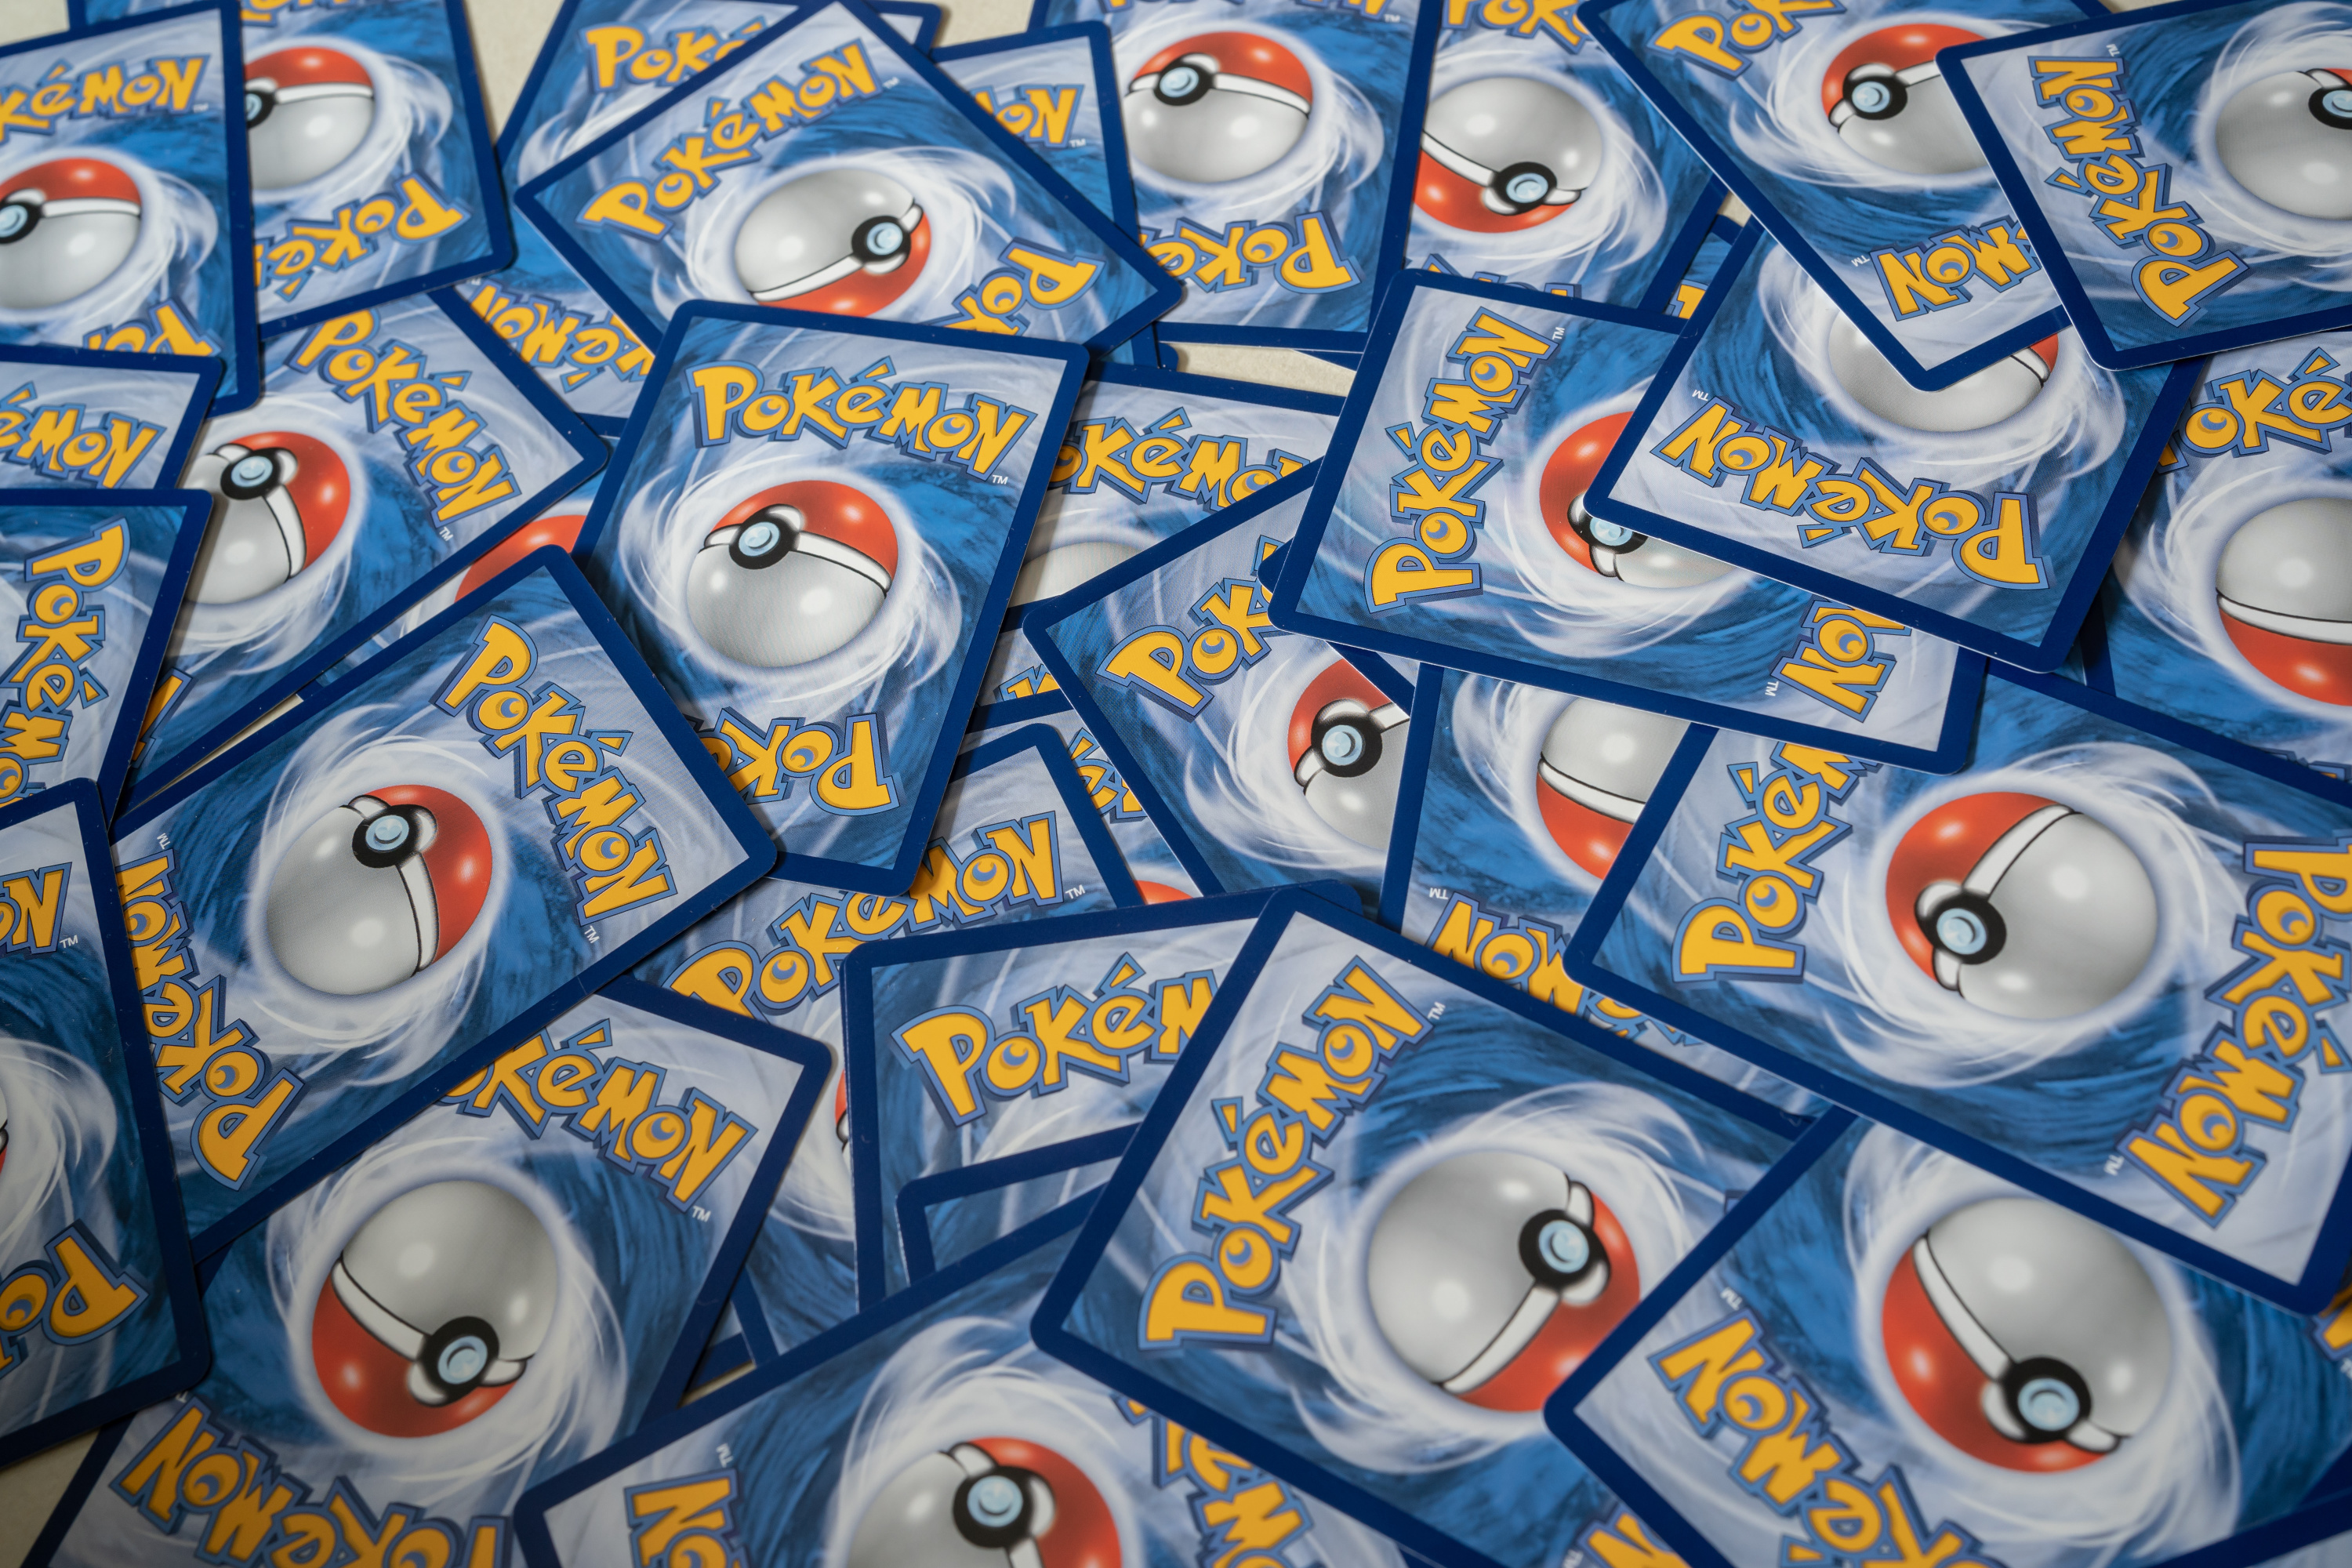 Insolite. Une carte Pokémon vendue près de 12 000 euros à Troyes -  Paris-Normandie